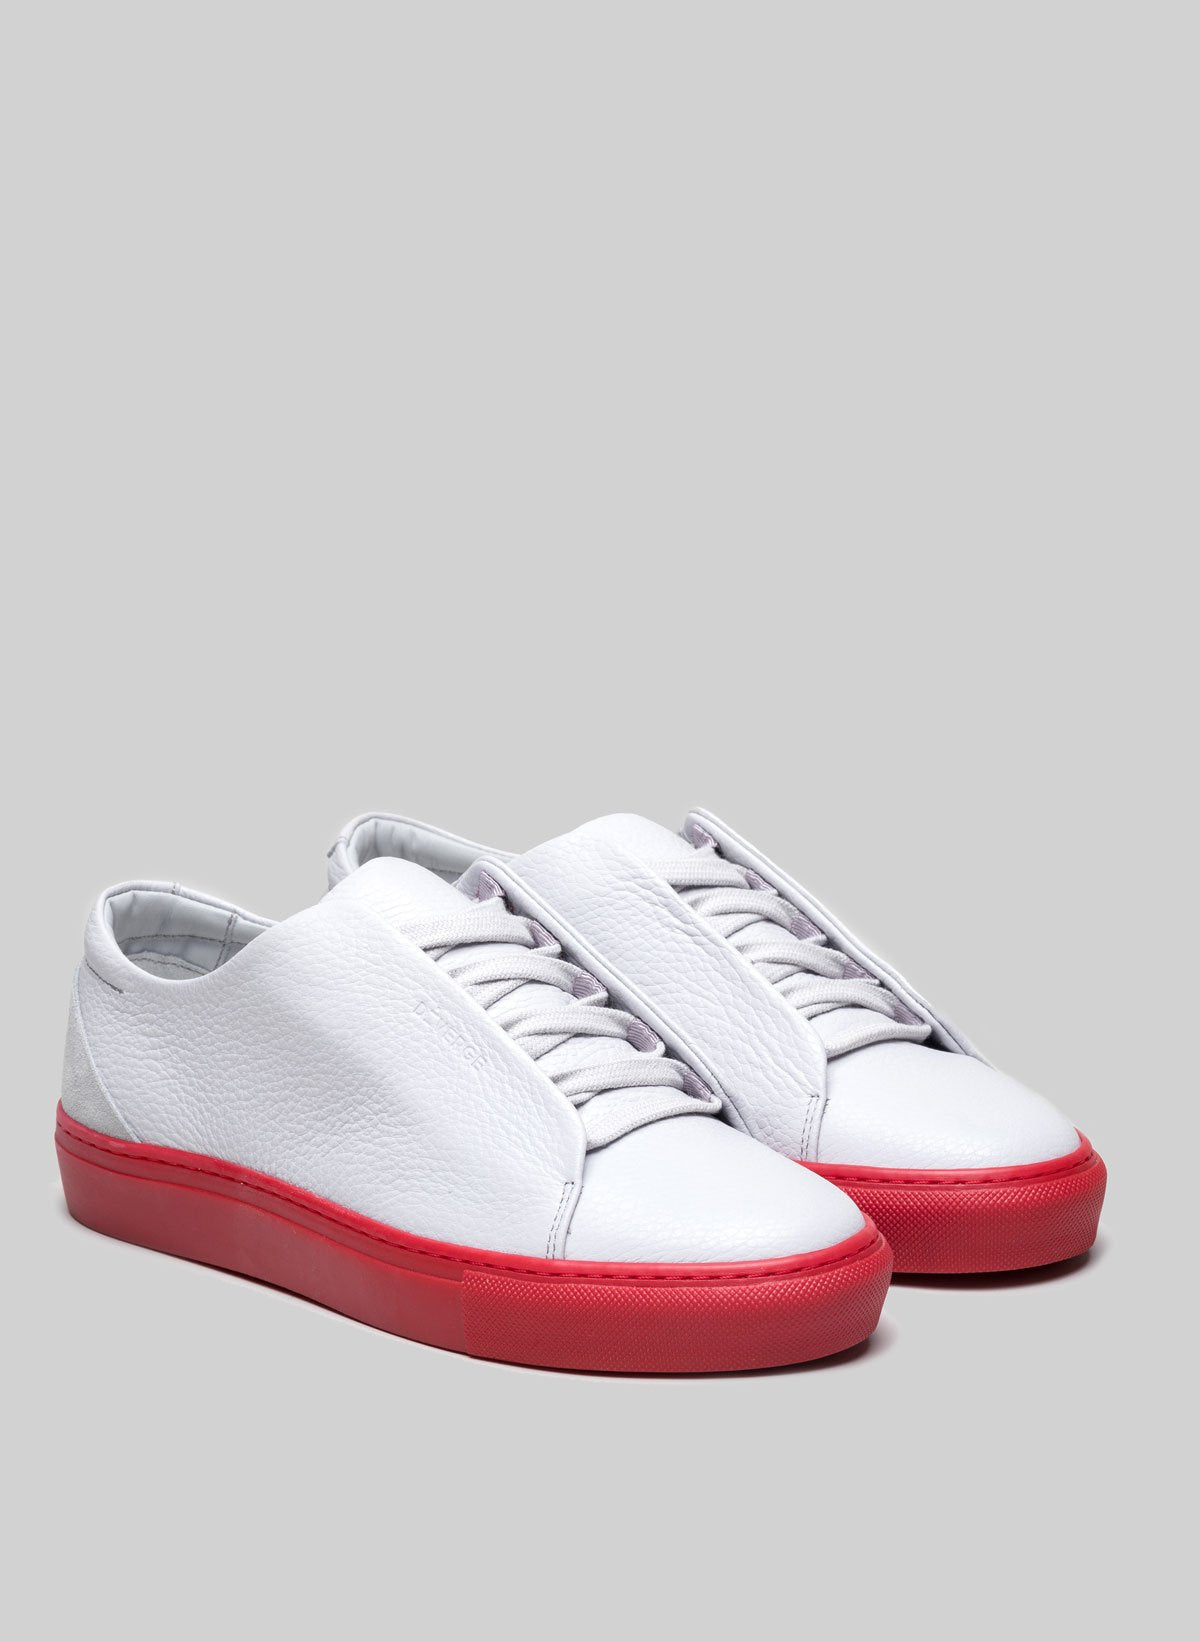 Un paio di sneakers low top personalizzate bianche con suola rossa di Diverge.